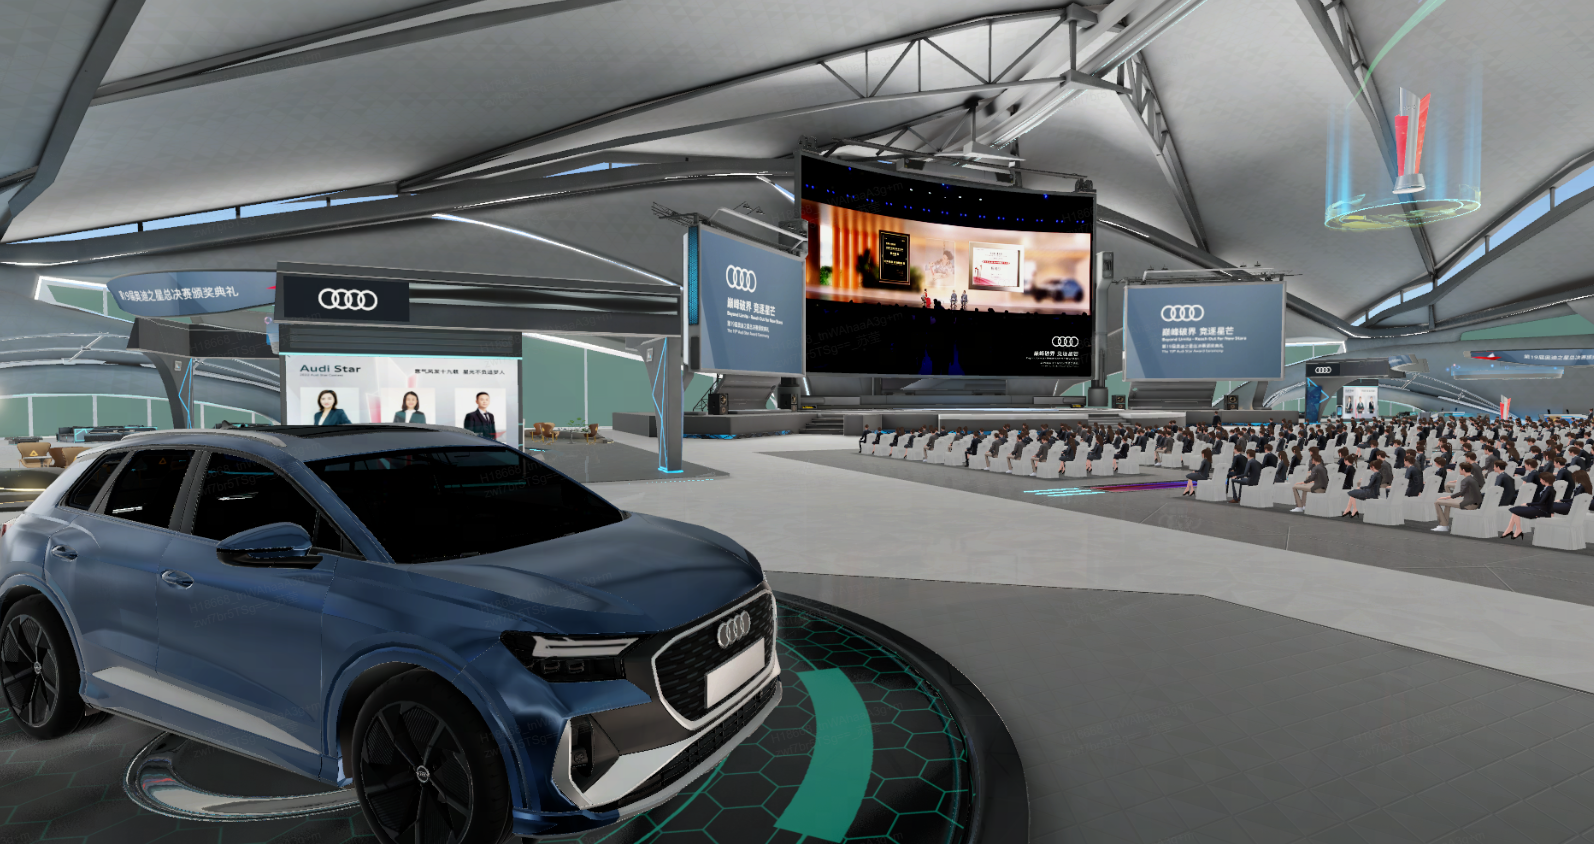 图片展示了一辆蓝色奥迪汽车，位于现代化的展览厅内，背景是大屏幕和坐着的观众。展厅设计现代，以白色和灰色为主。